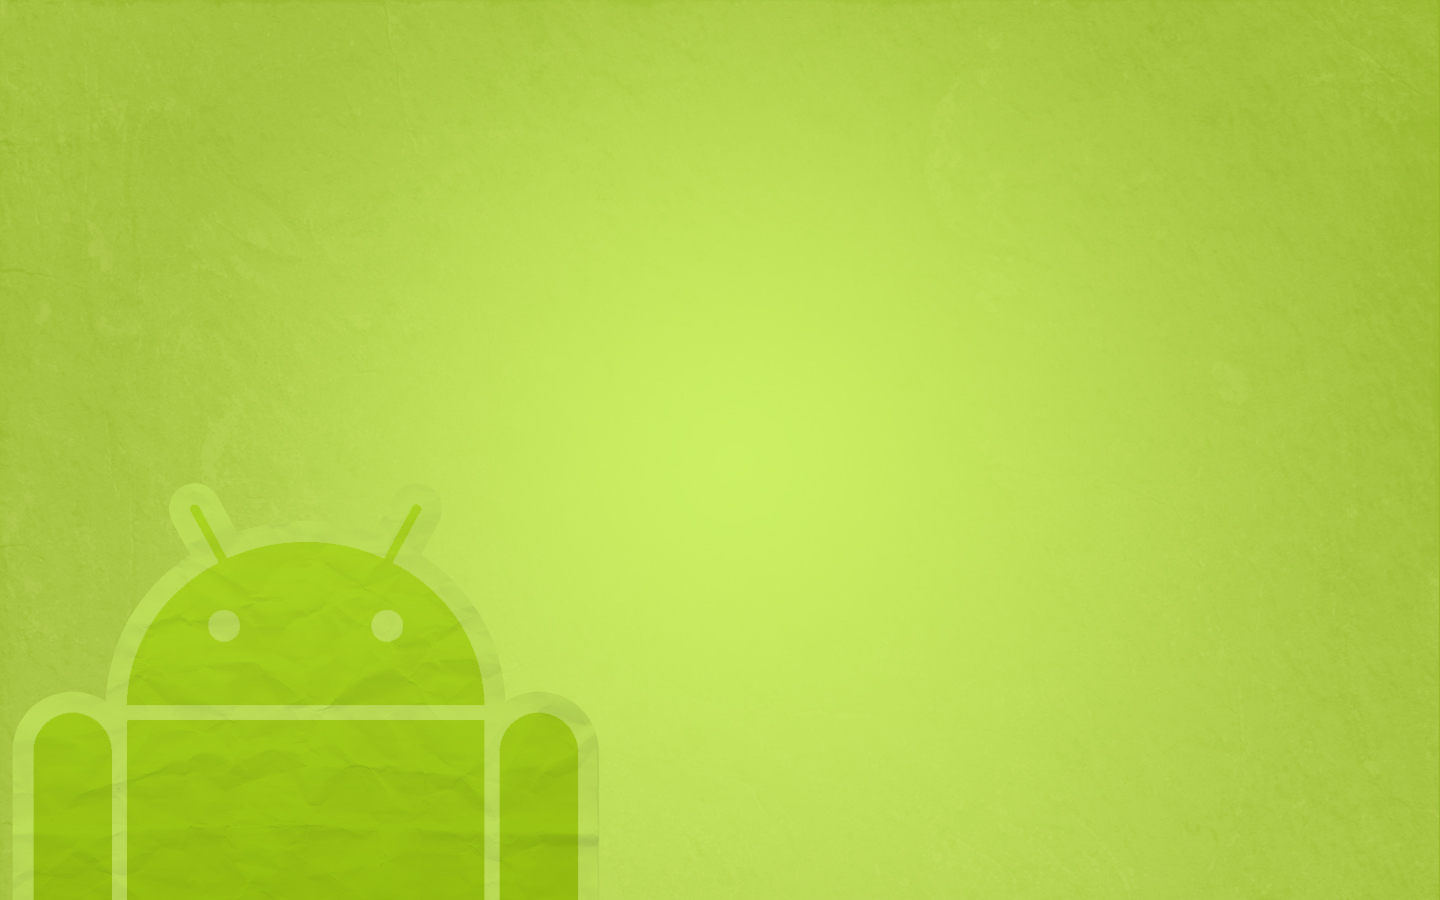 kostenlose wallpaper hintergründe für android,grün,gelb,illustration,hintergrund